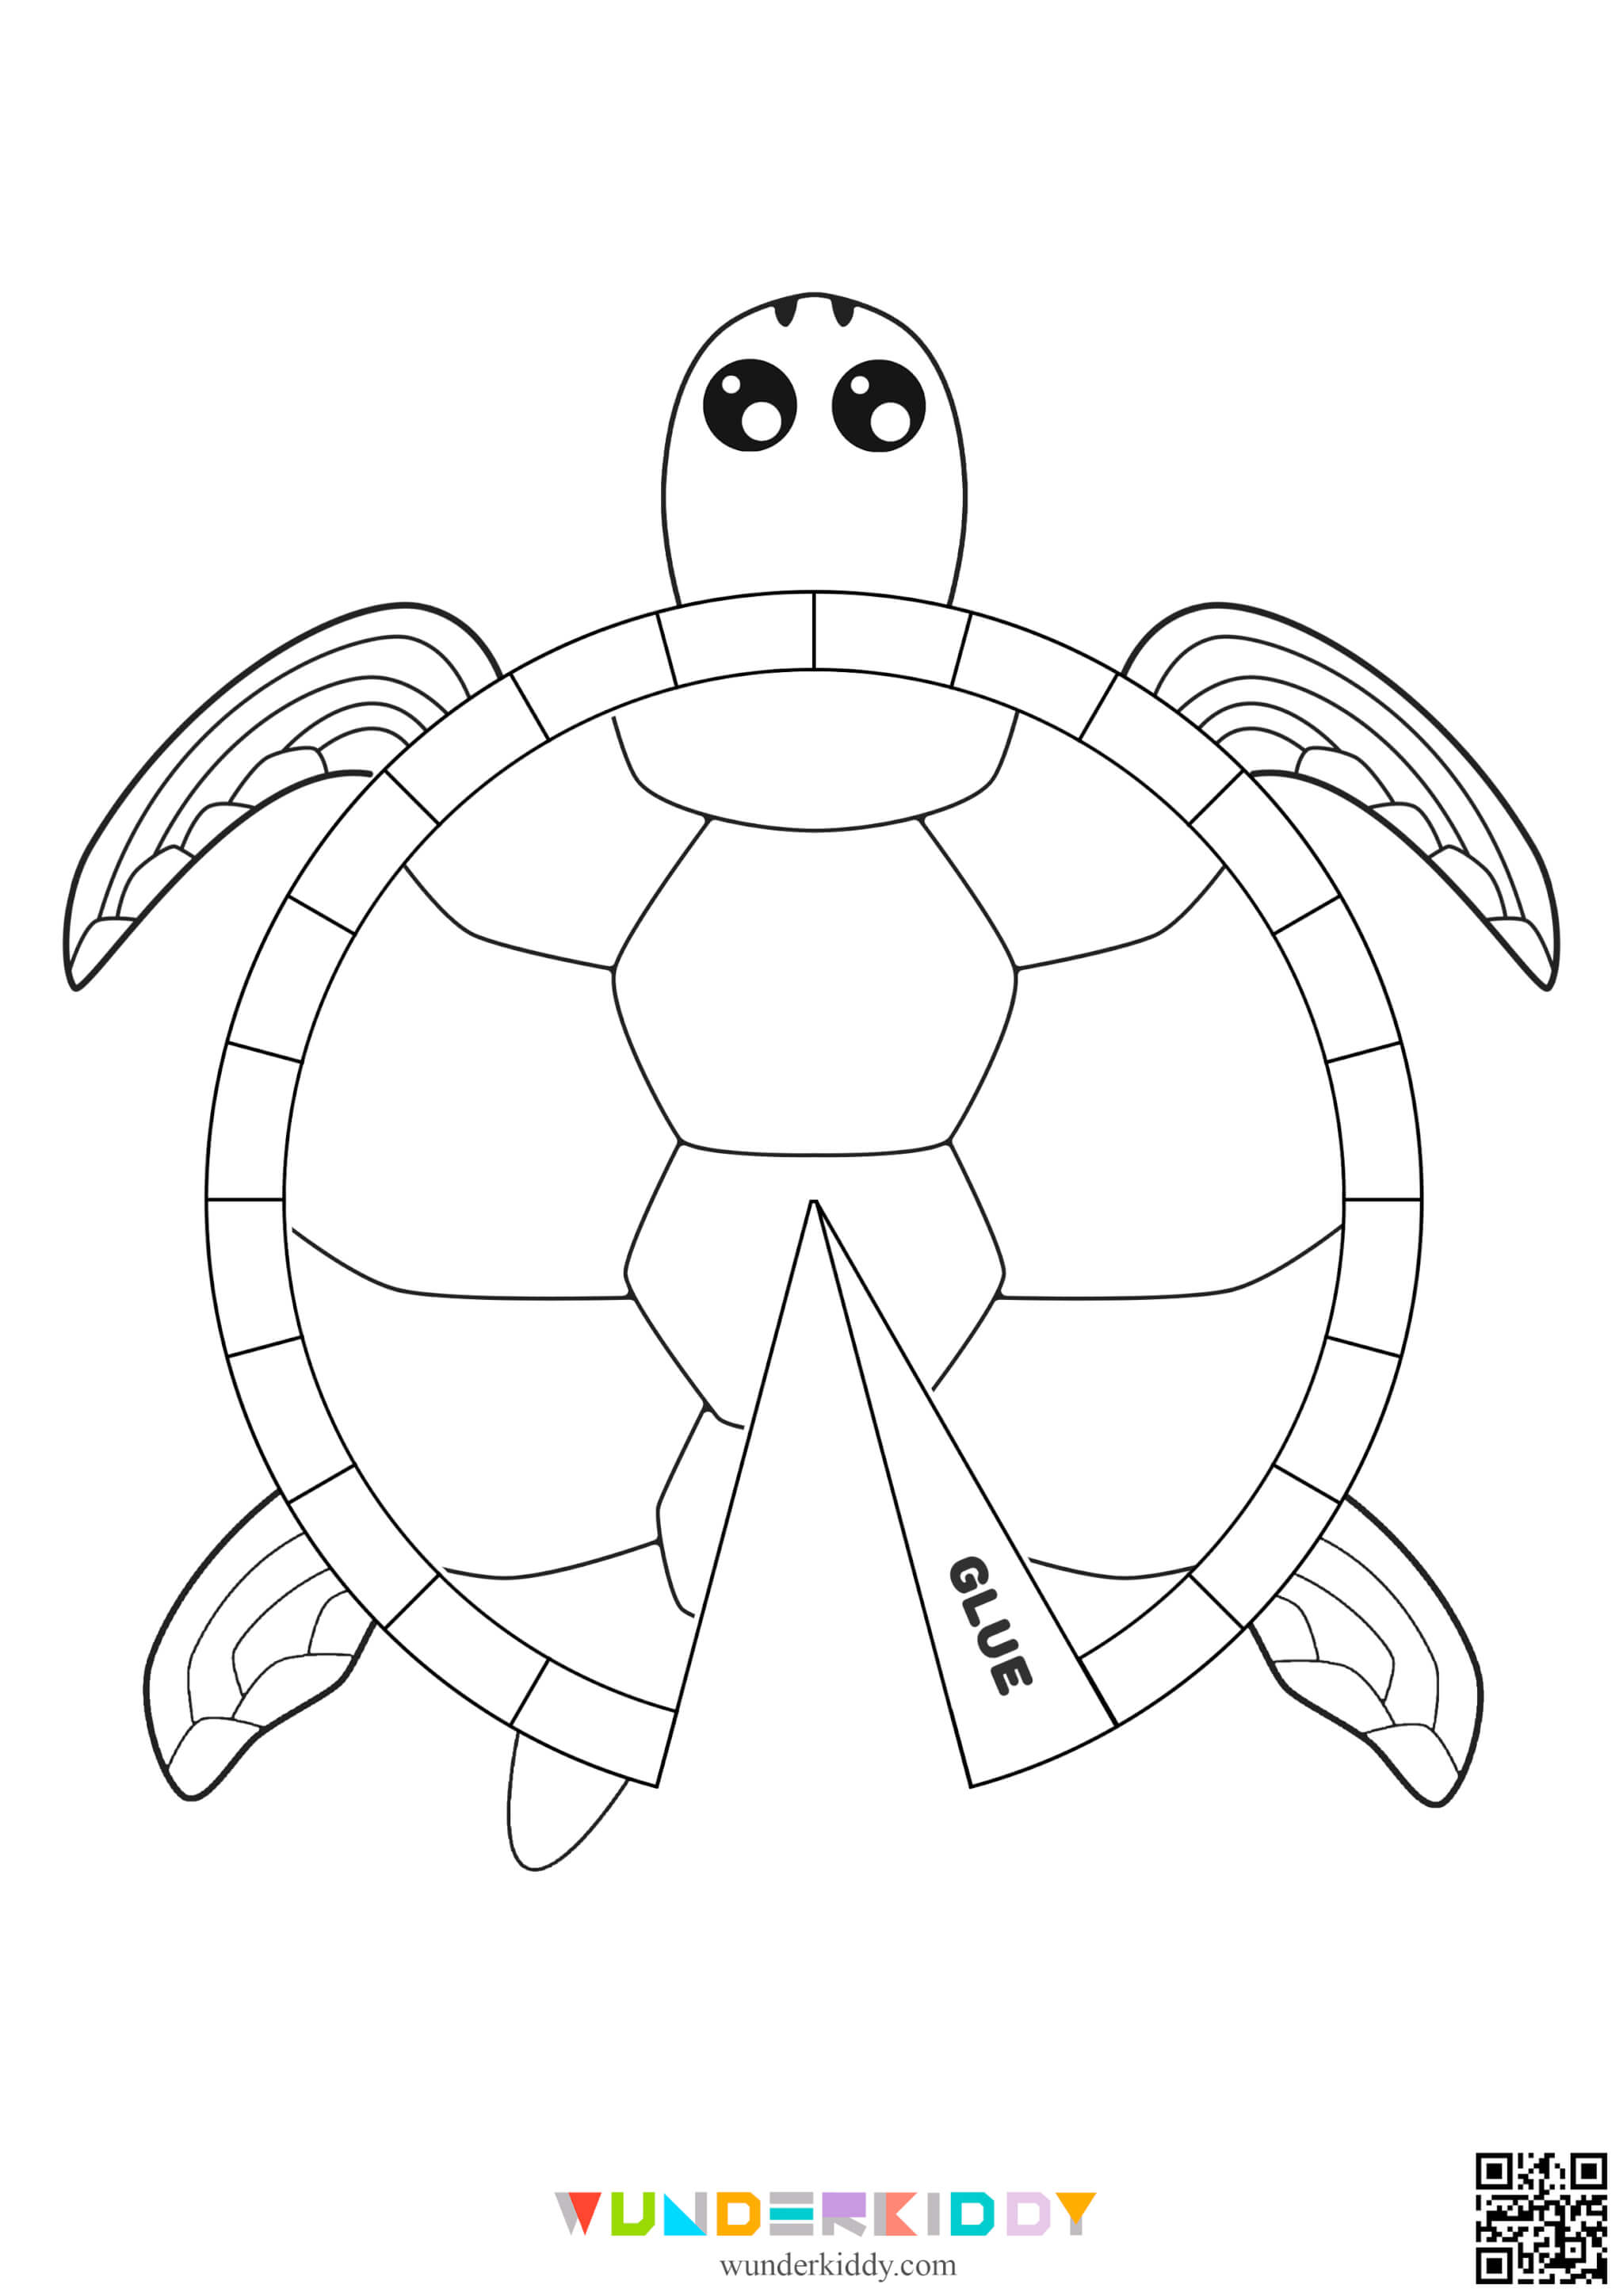 Schildkröten-Bastelvorlage - Bild 3